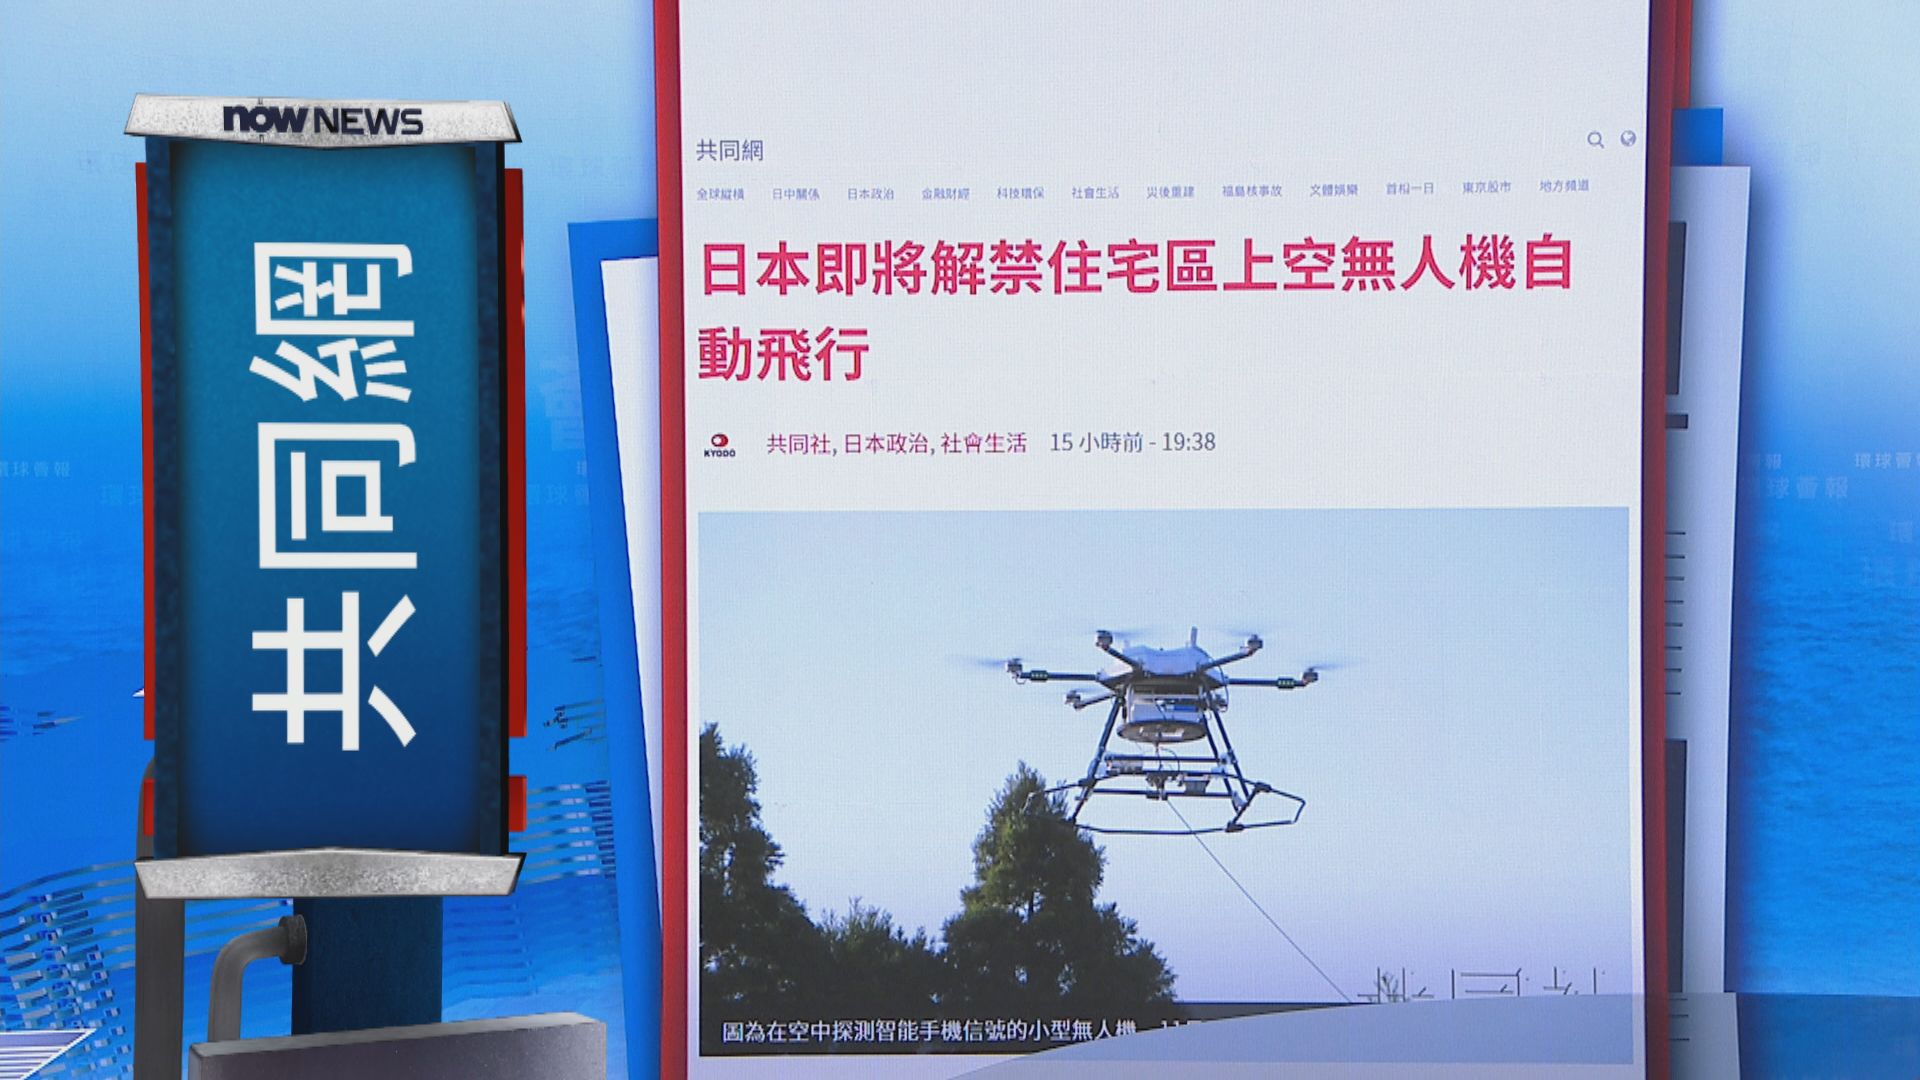 【環球薈報】日本周一起允許無人機於市區自動飛行